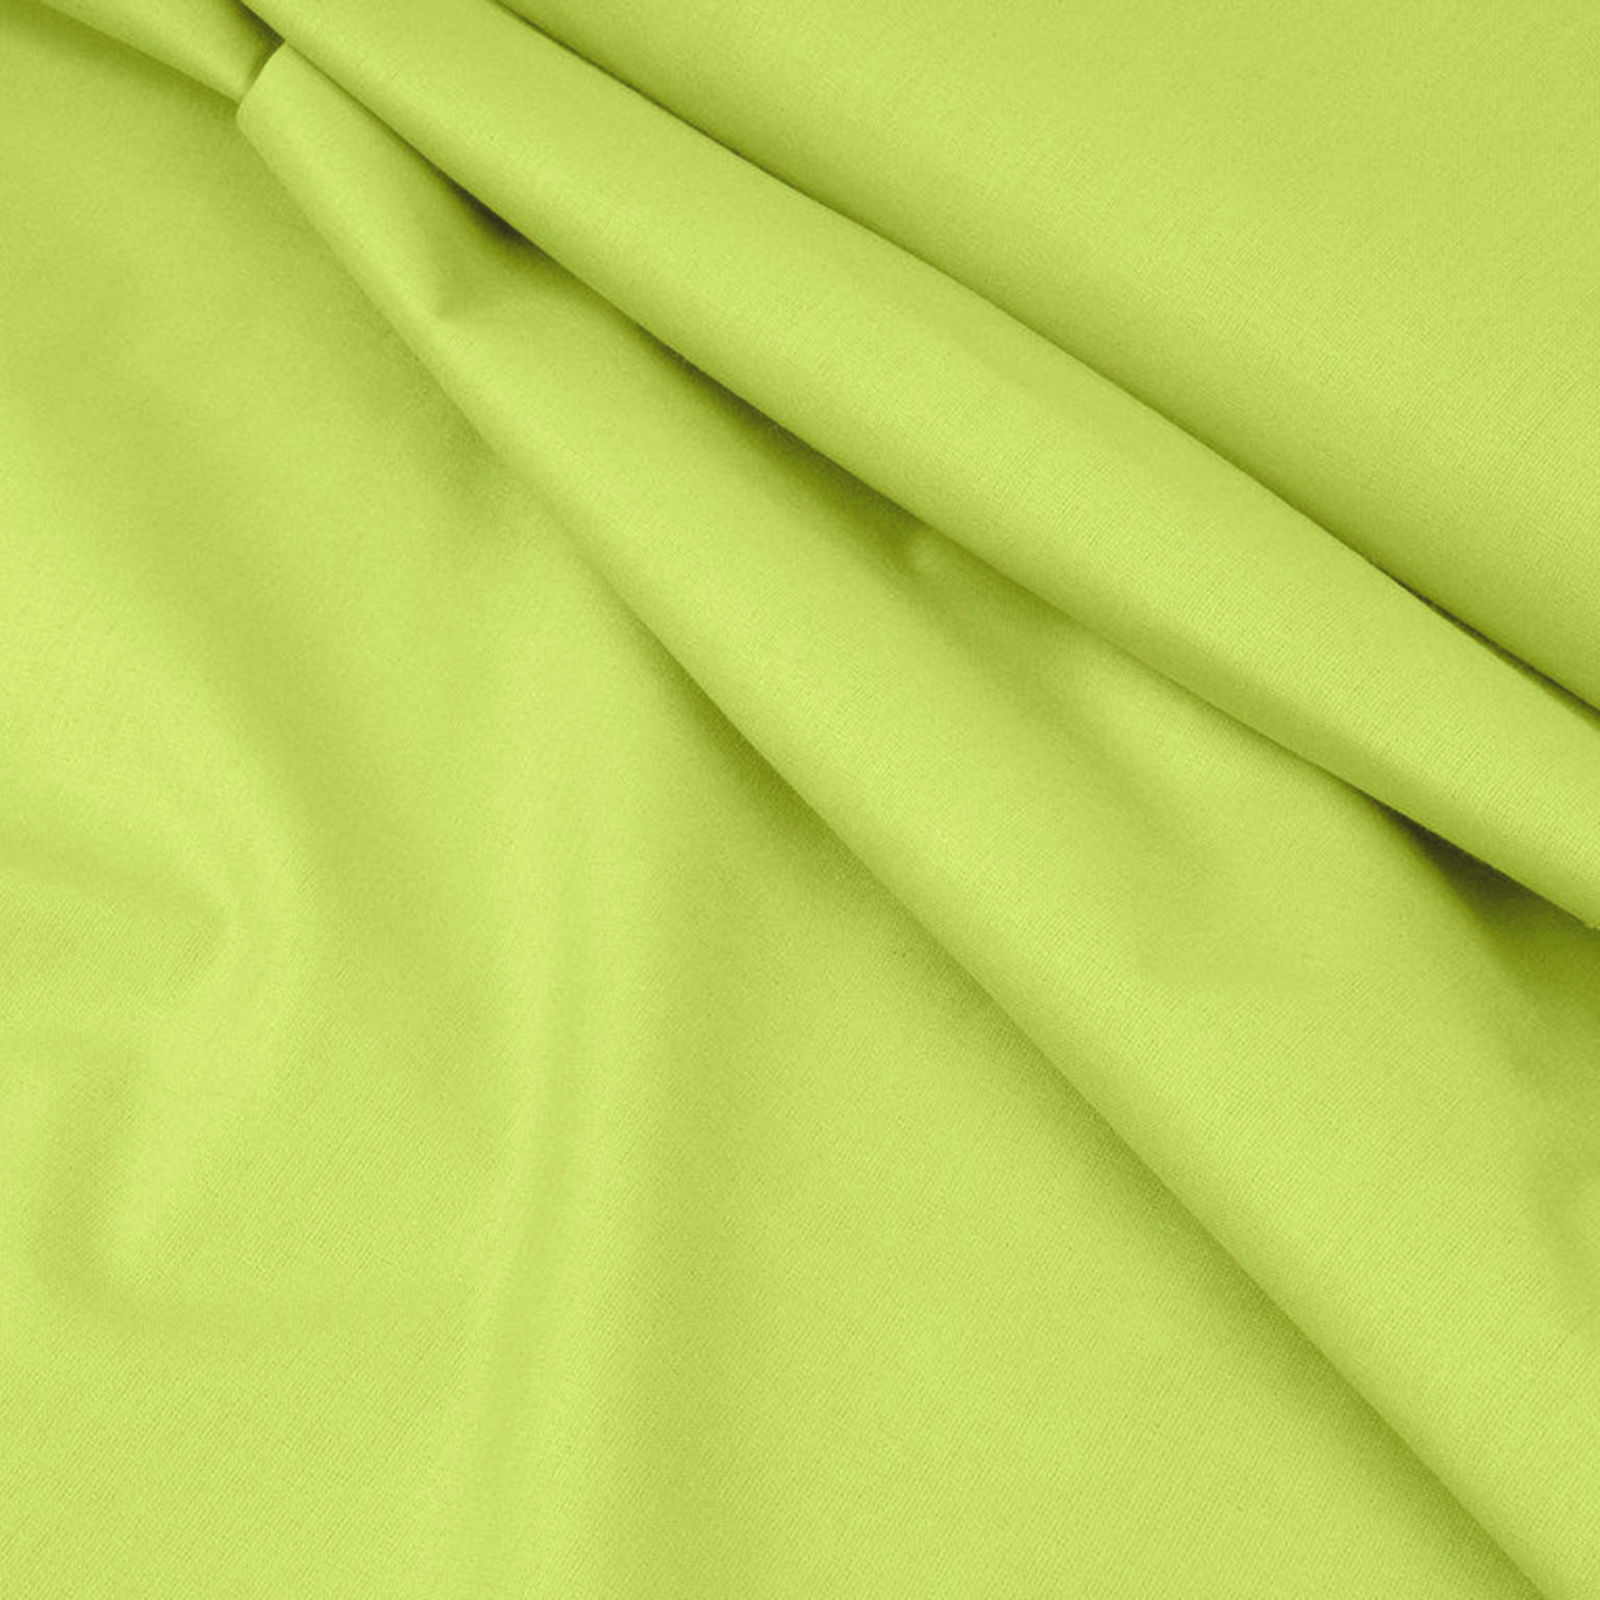 Egyszínű pamutvászon Suzy - pisztácia zöld